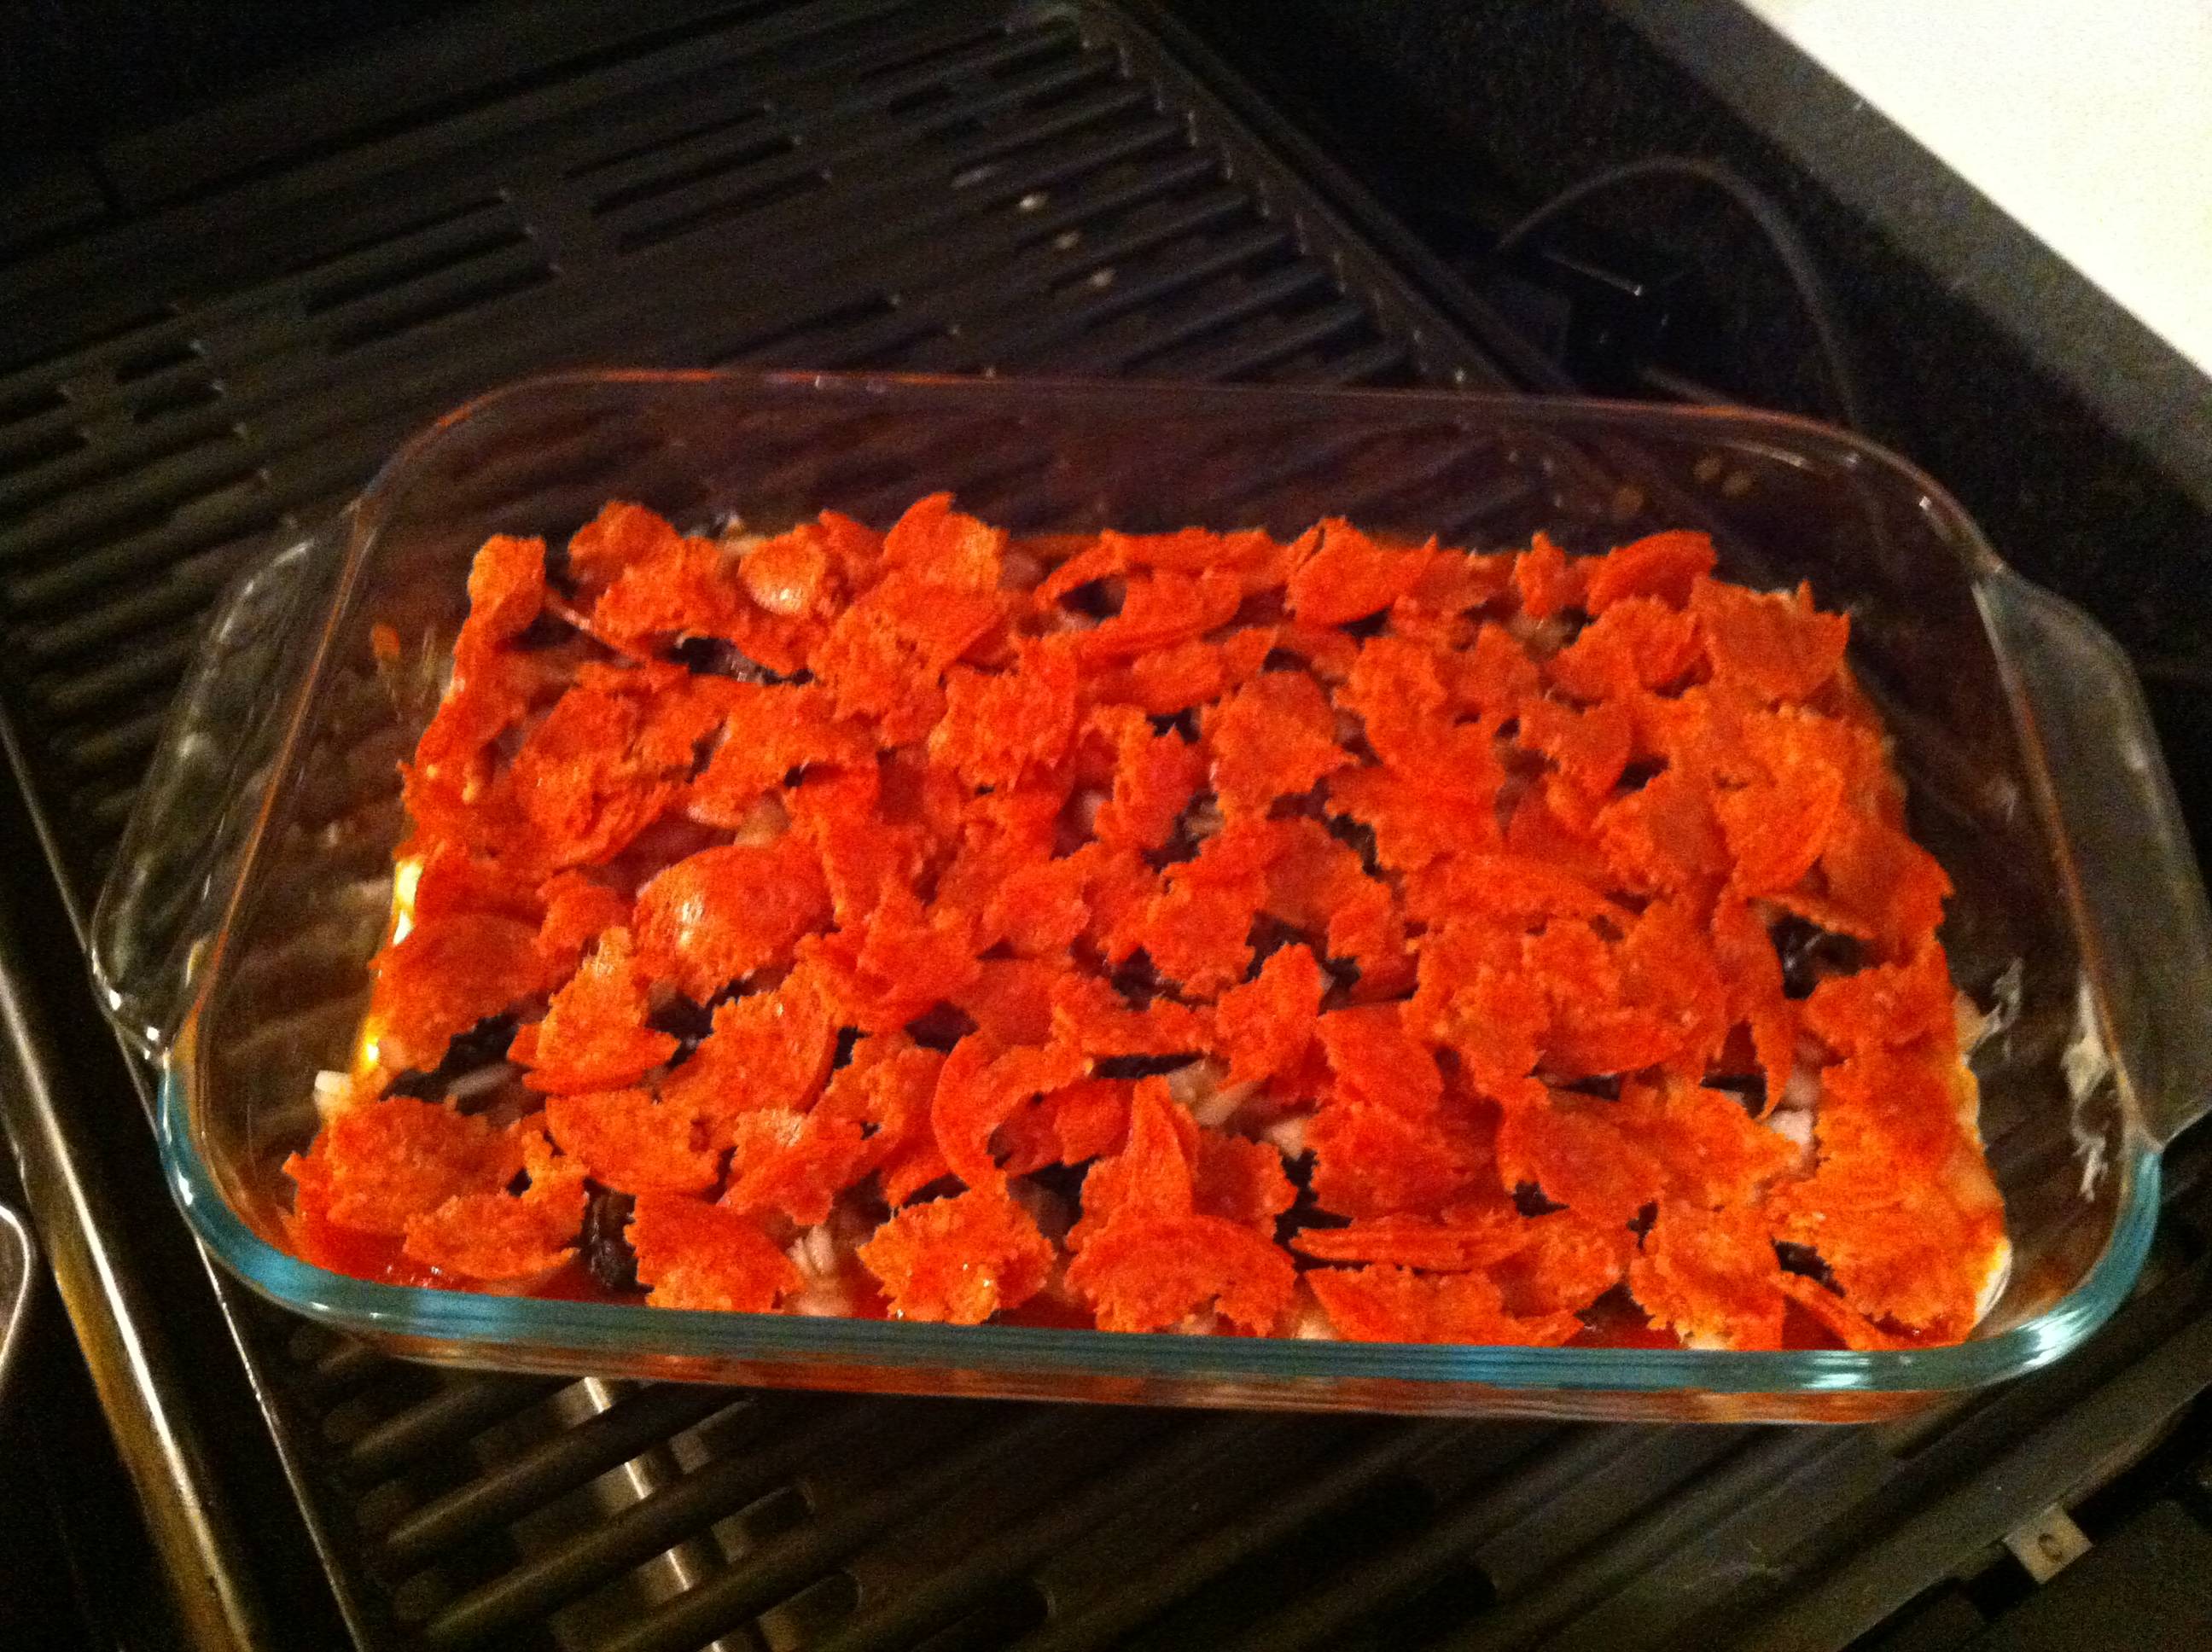 Torn pepperoni in baking pan